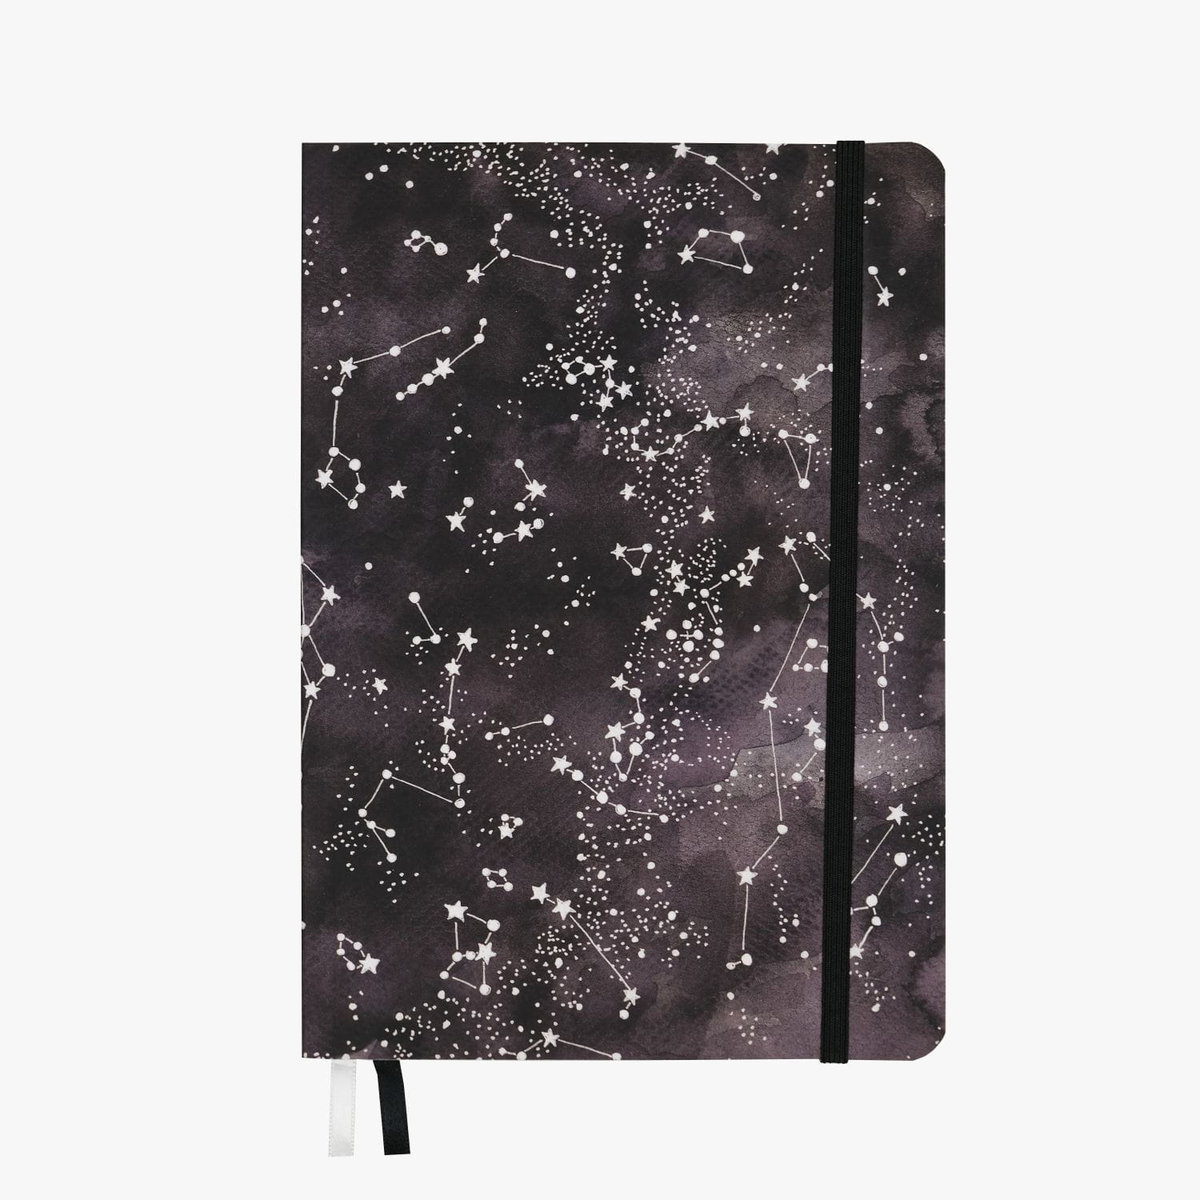 Starry Night - notatnik A5, bullet journal, planer w kropki, notes miękka oprawa, biały i czarny papier 120g/m2